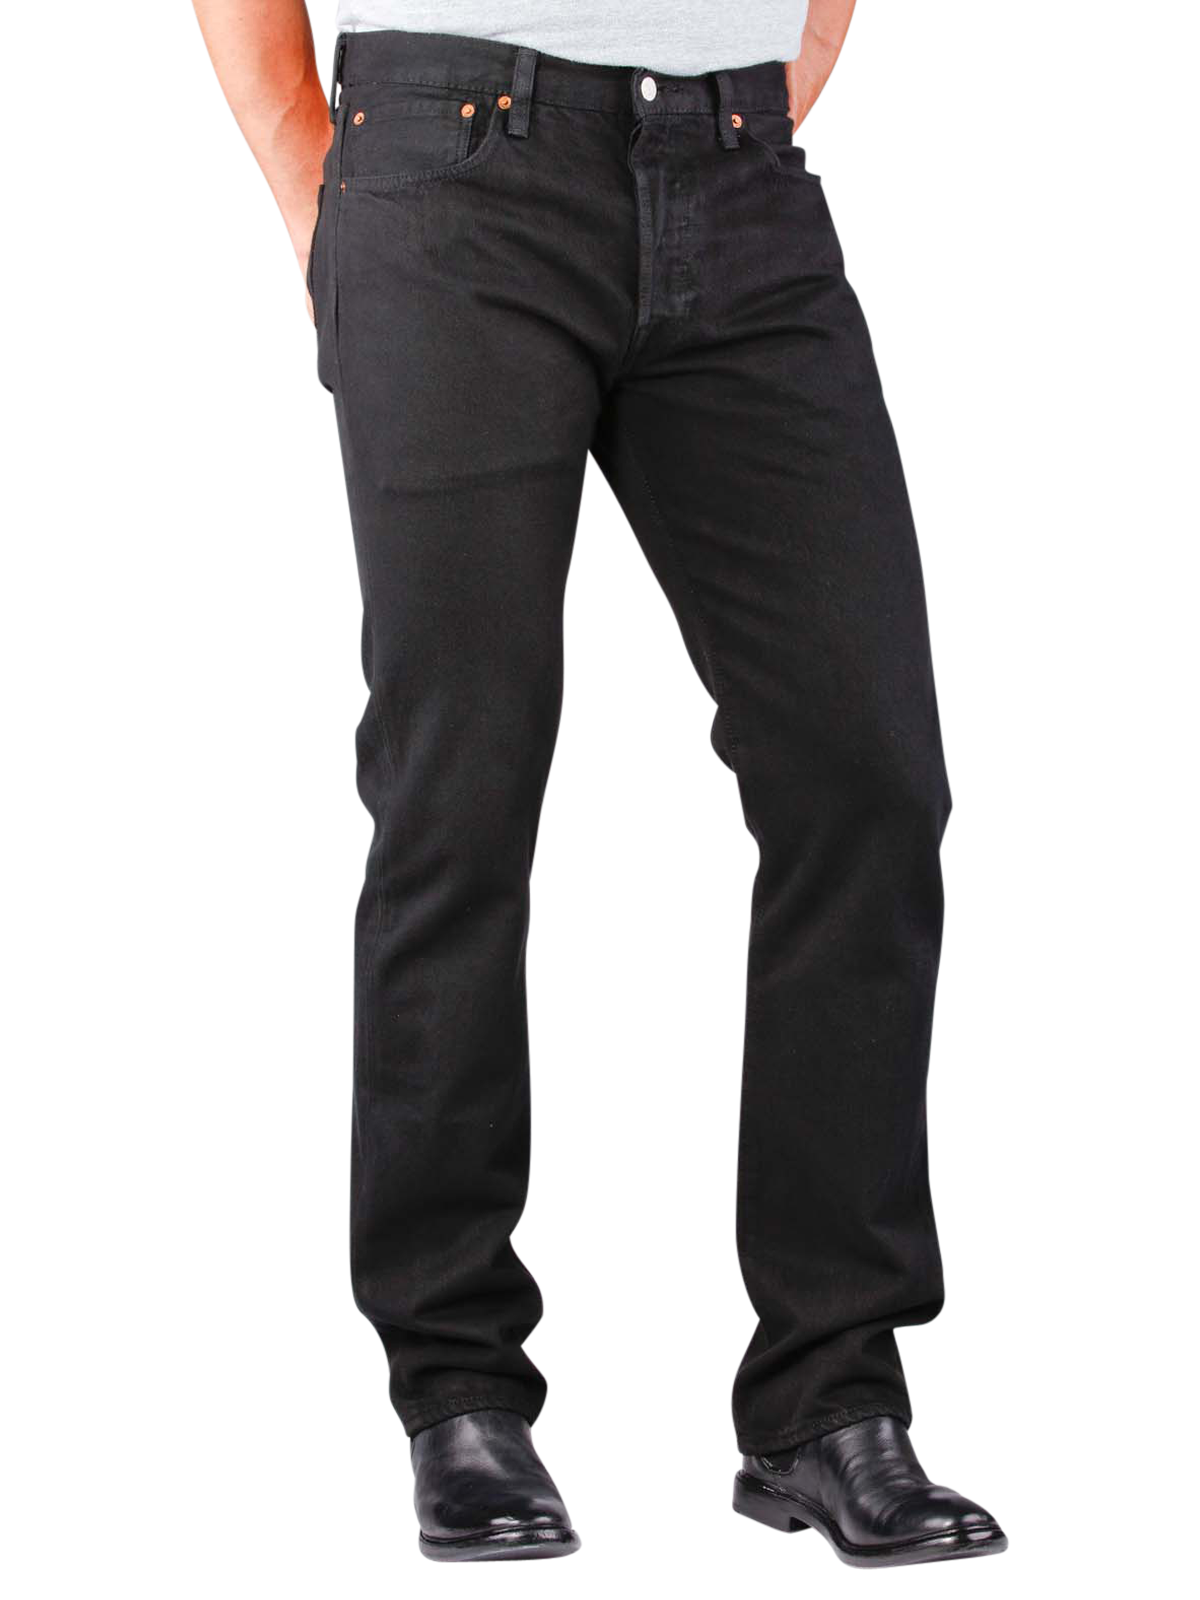 Levi‘s 501 Jeans black | Gratis Lieferung - JEANS.CH - Levi Jeans Colors